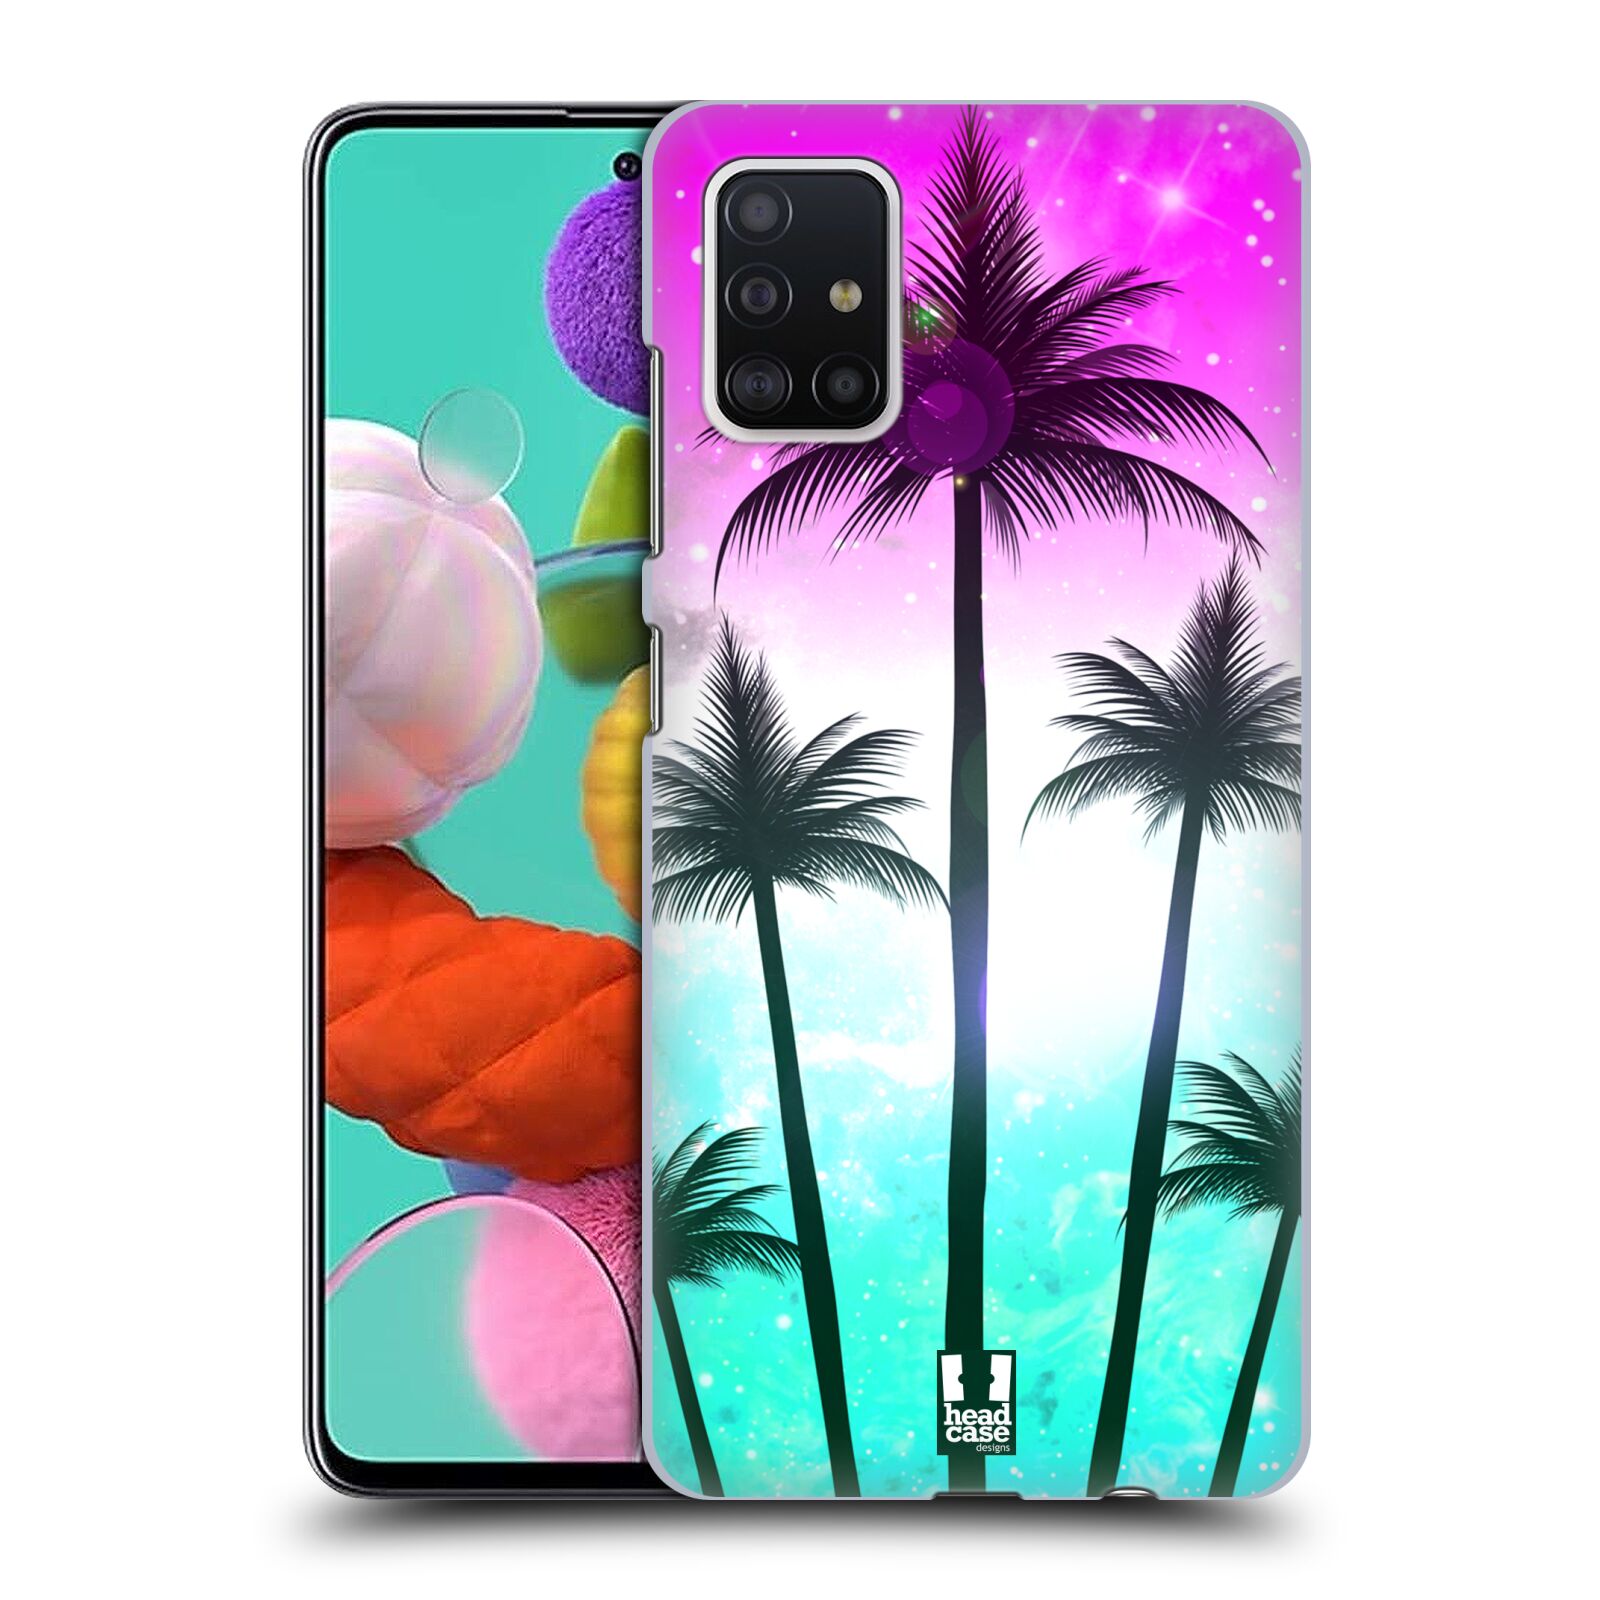 Pouzdro na mobil Samsung Galaxy A51 - HEAD CASE - vzor Kreslený motiv silueta moře a palmy RŮŽOVÁ A TYRKYS